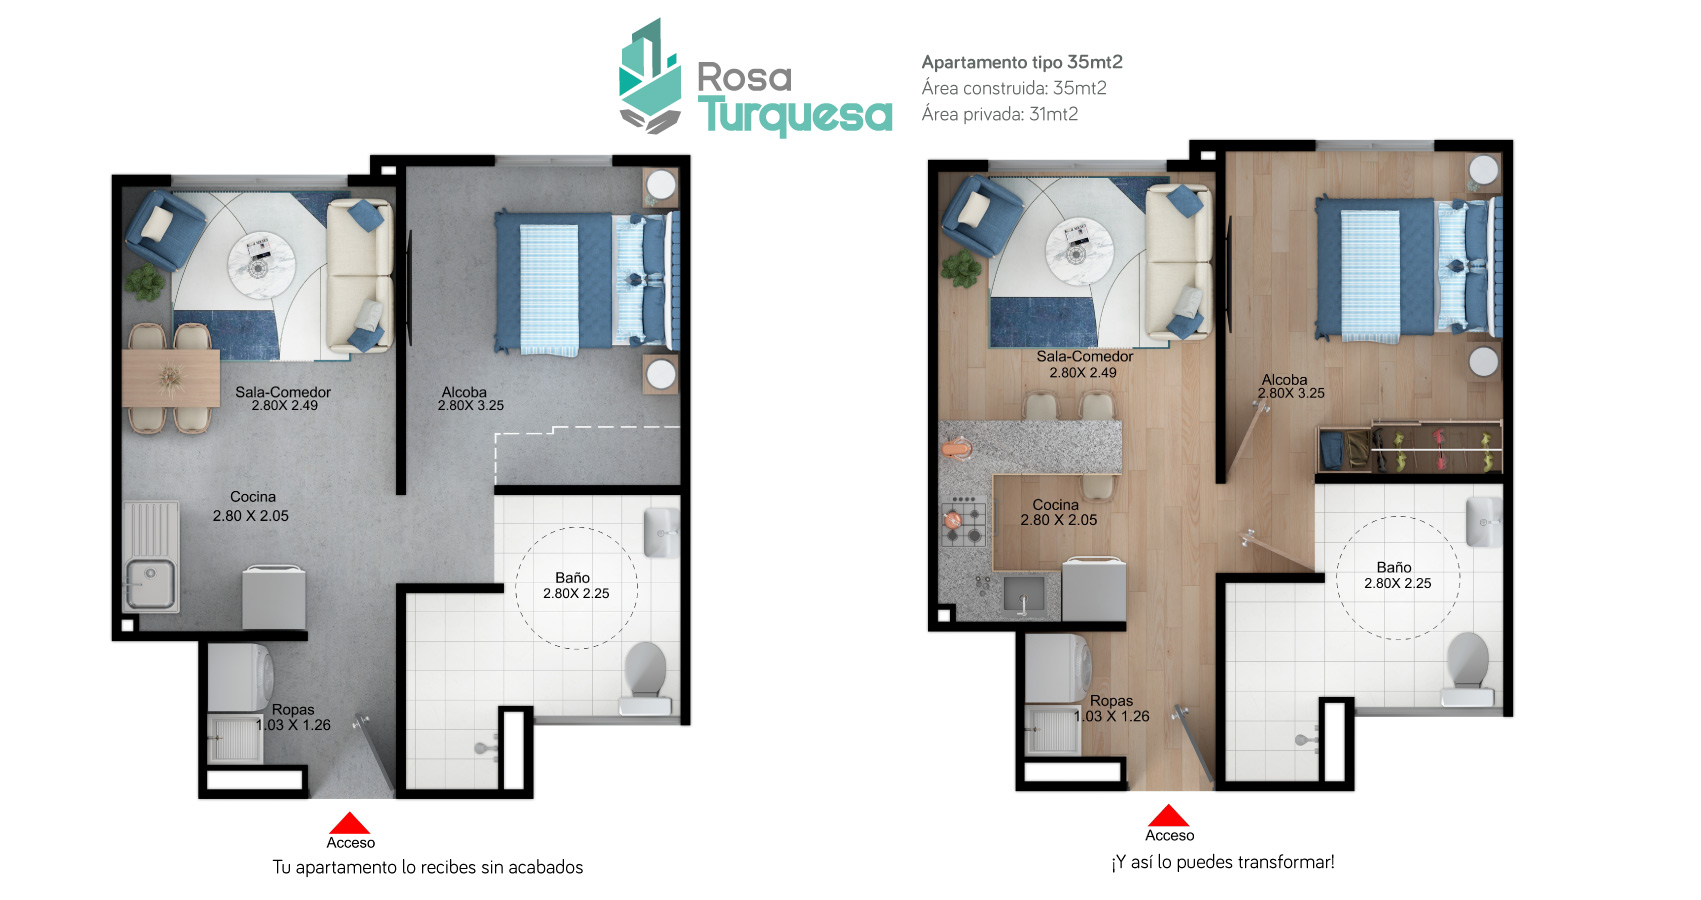 Rosa Turquesa proyecto de apartamentos con susbidio de vivienda